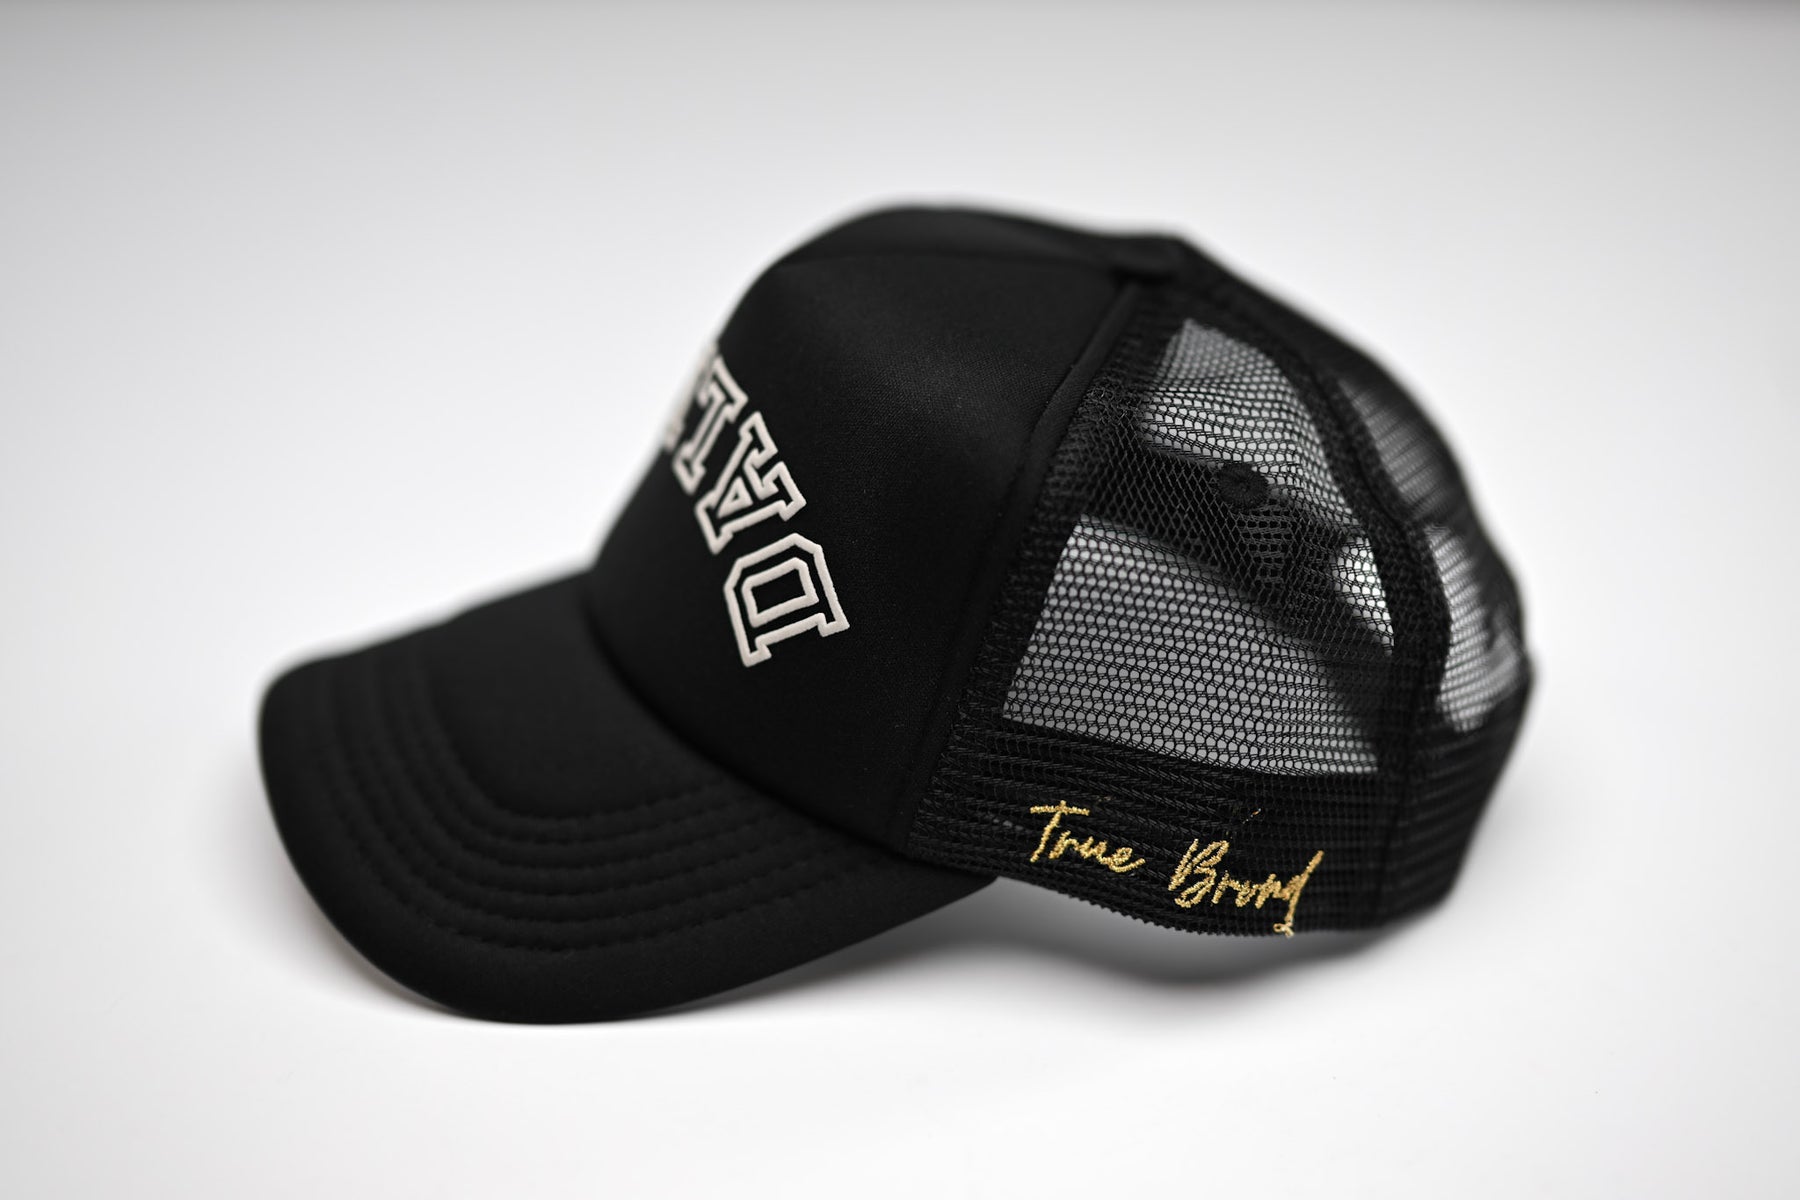 Upside Down Dallas trucker hat - Black – True Brvnd